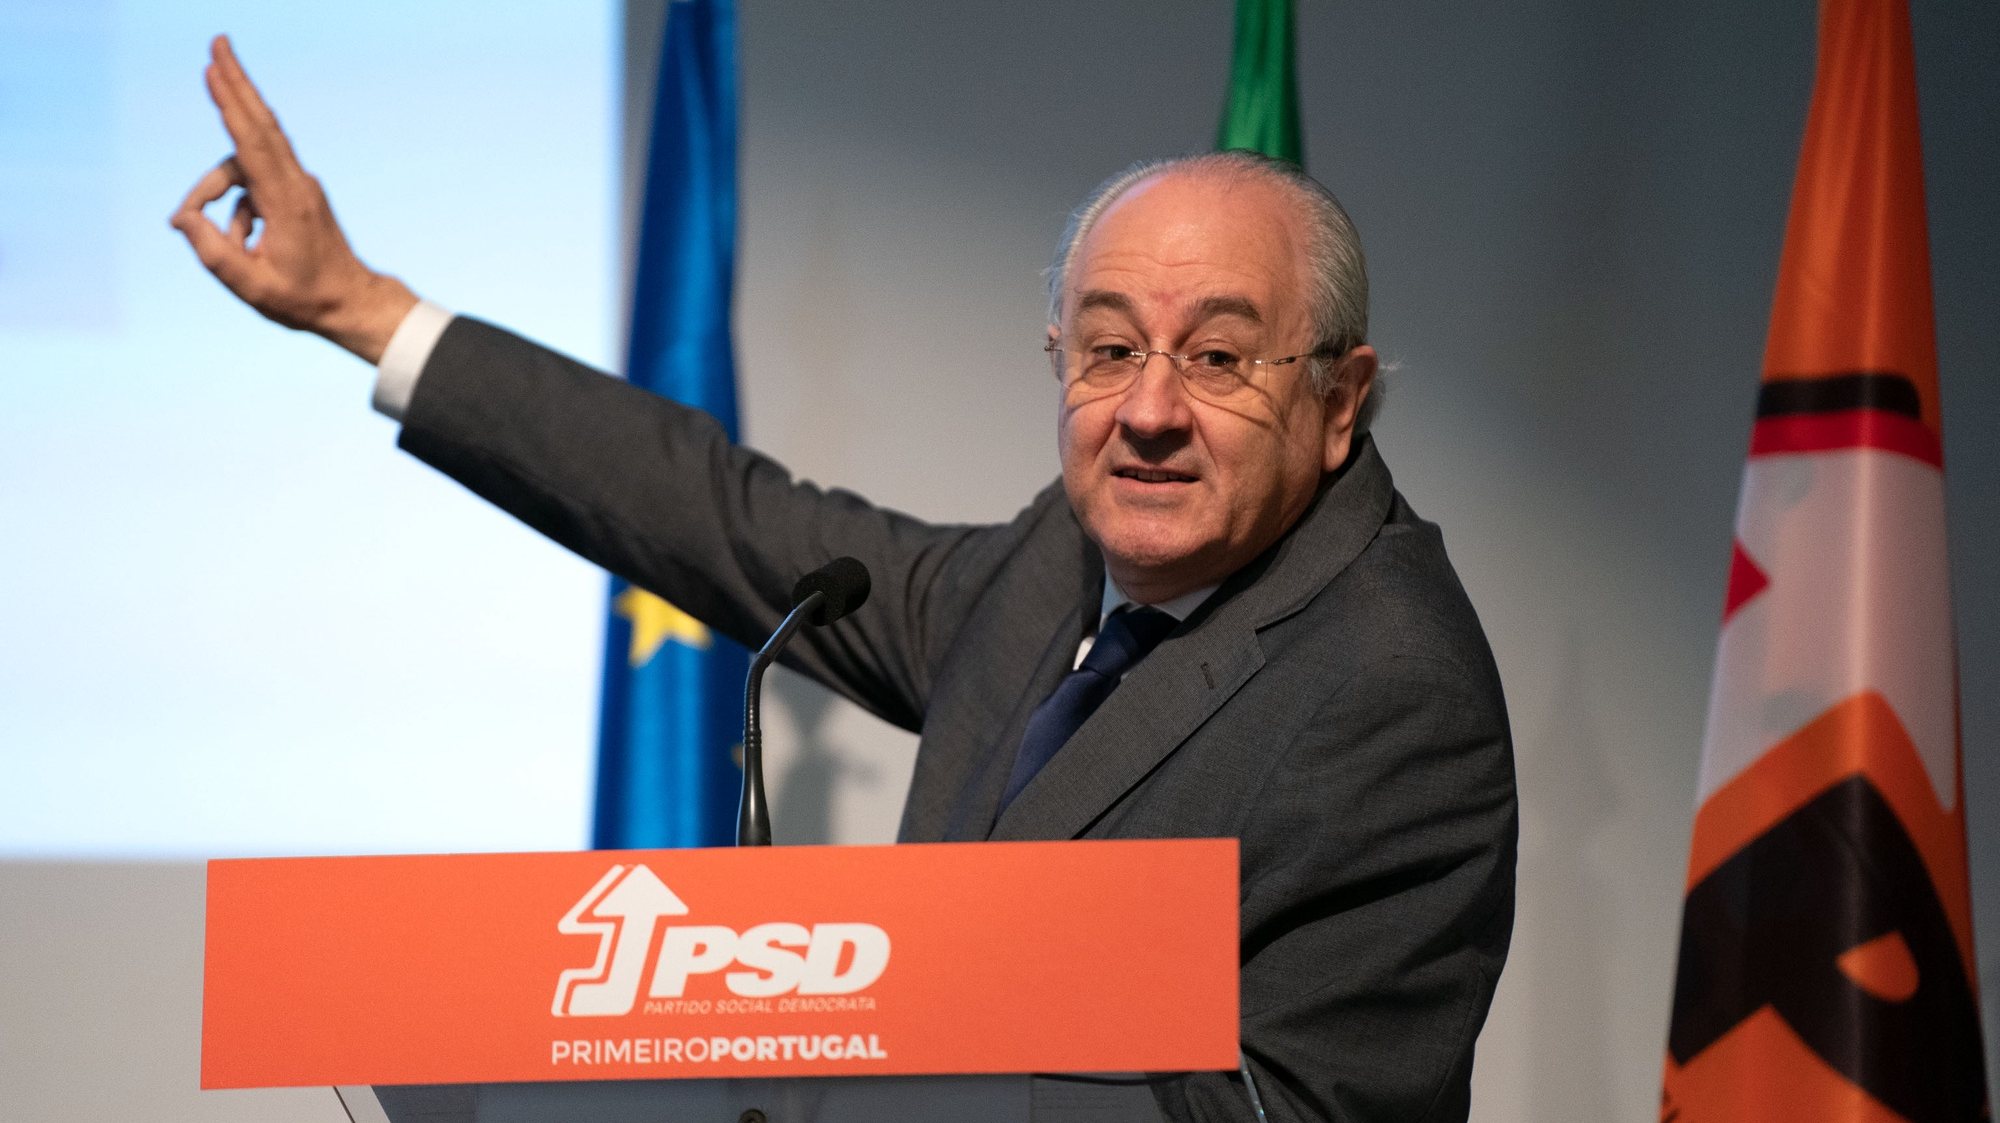 O presidente do Partido Social Demovtara (PSD), Rui Rio, durante a apresentação da proposta para reforma do sistema eleitoral, na Casa Municipal da Cultura de Pedrógão Grande, 23 de julho de 2021. SÉRGIO AZENHA/LUSA